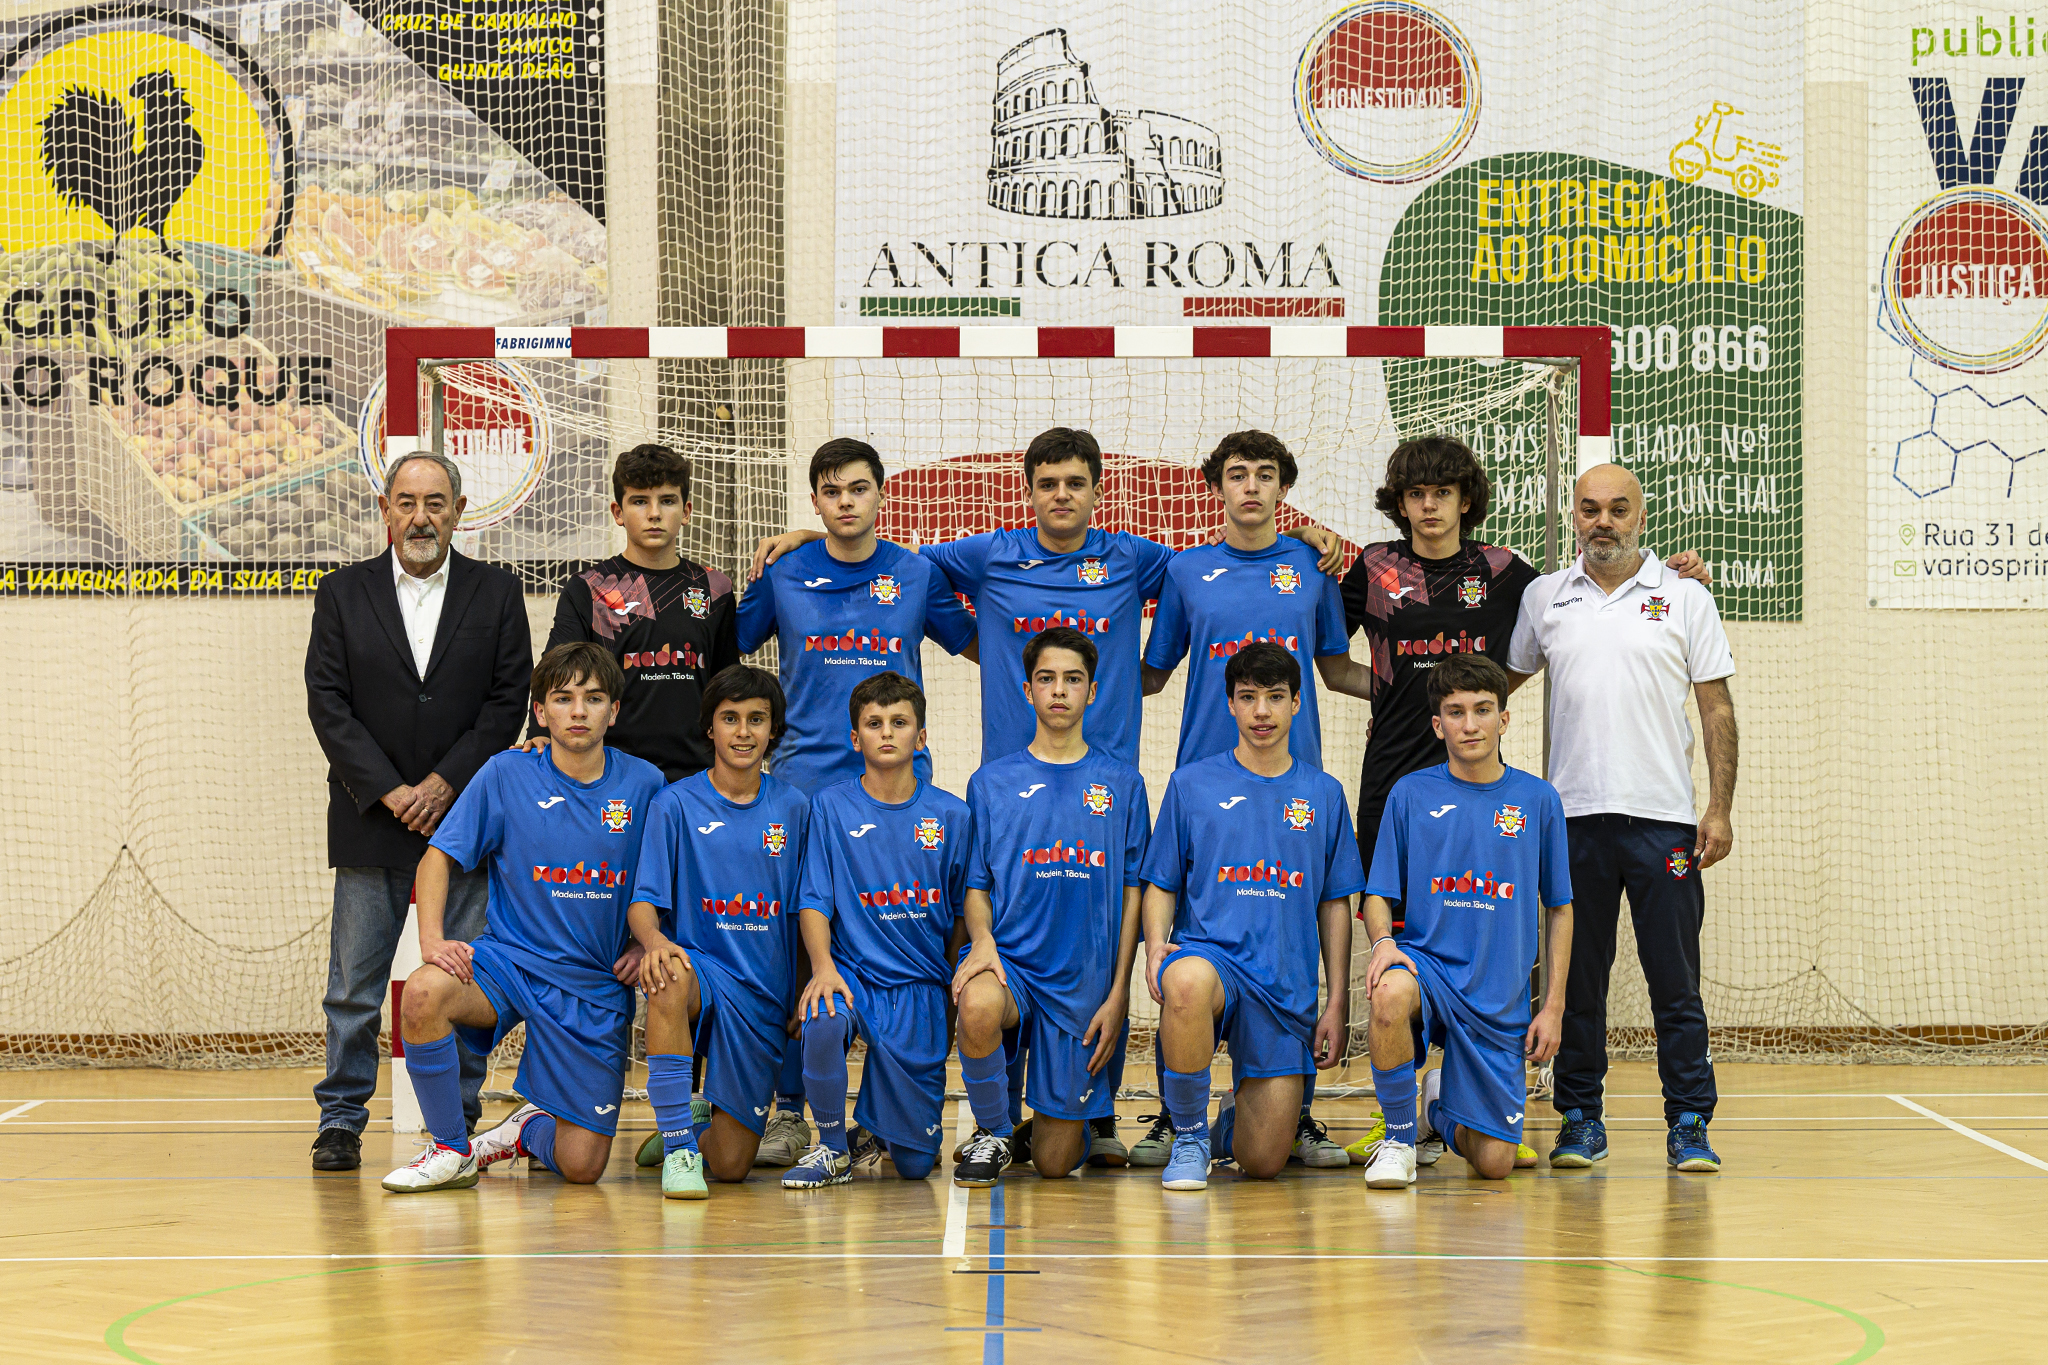 Futsal: Viana do Castelo acolhe Interassociações SUB-15